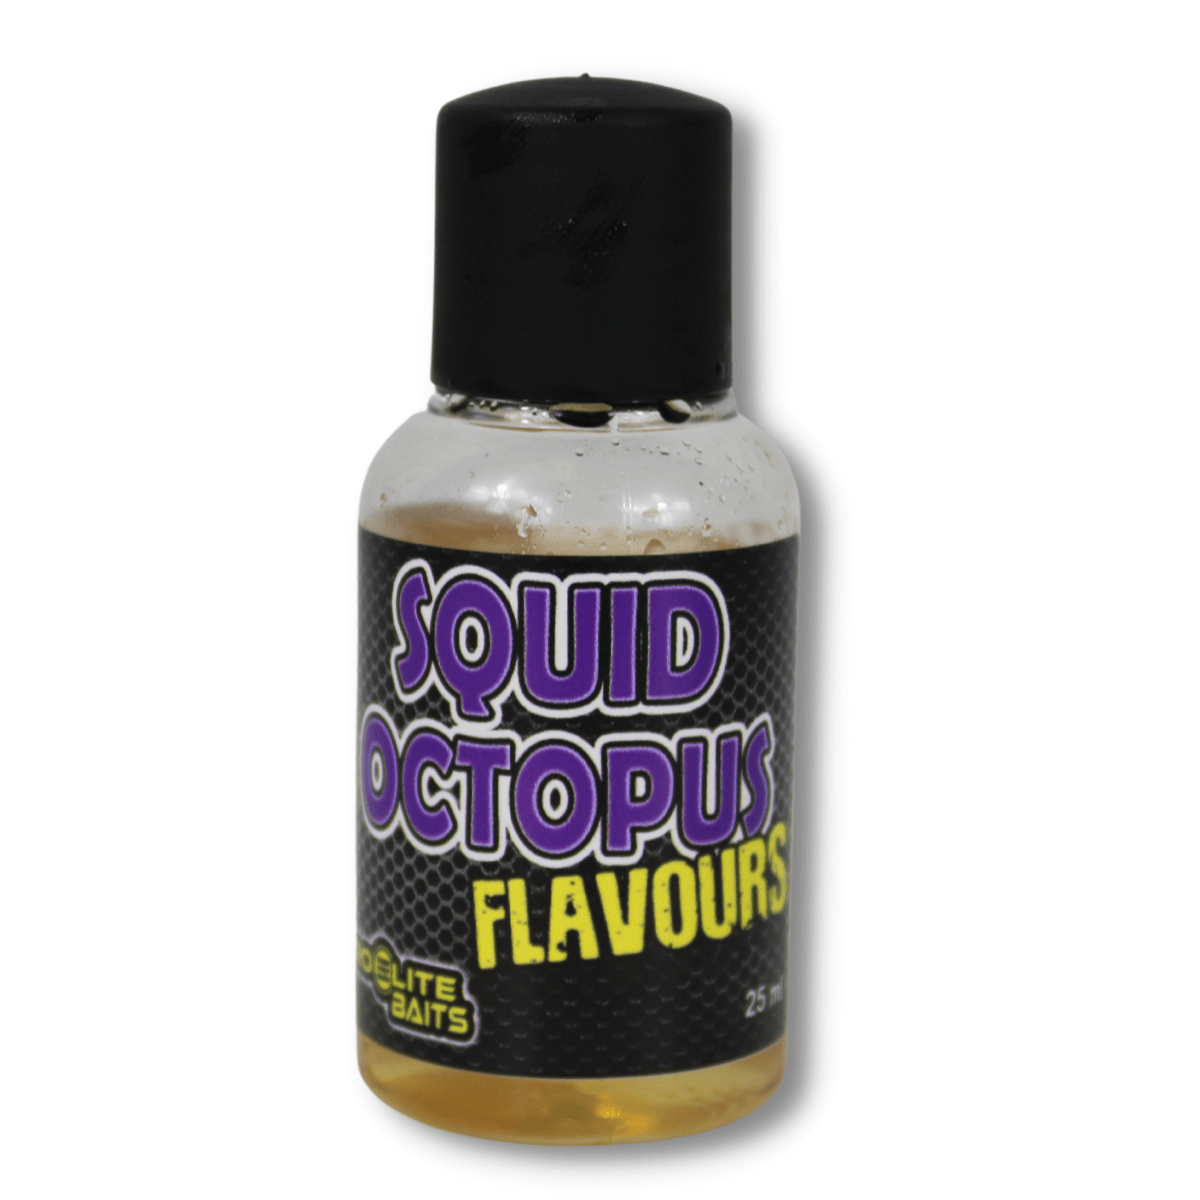 Aróma Flavours Pro Elite Baits Squid Chobotnica